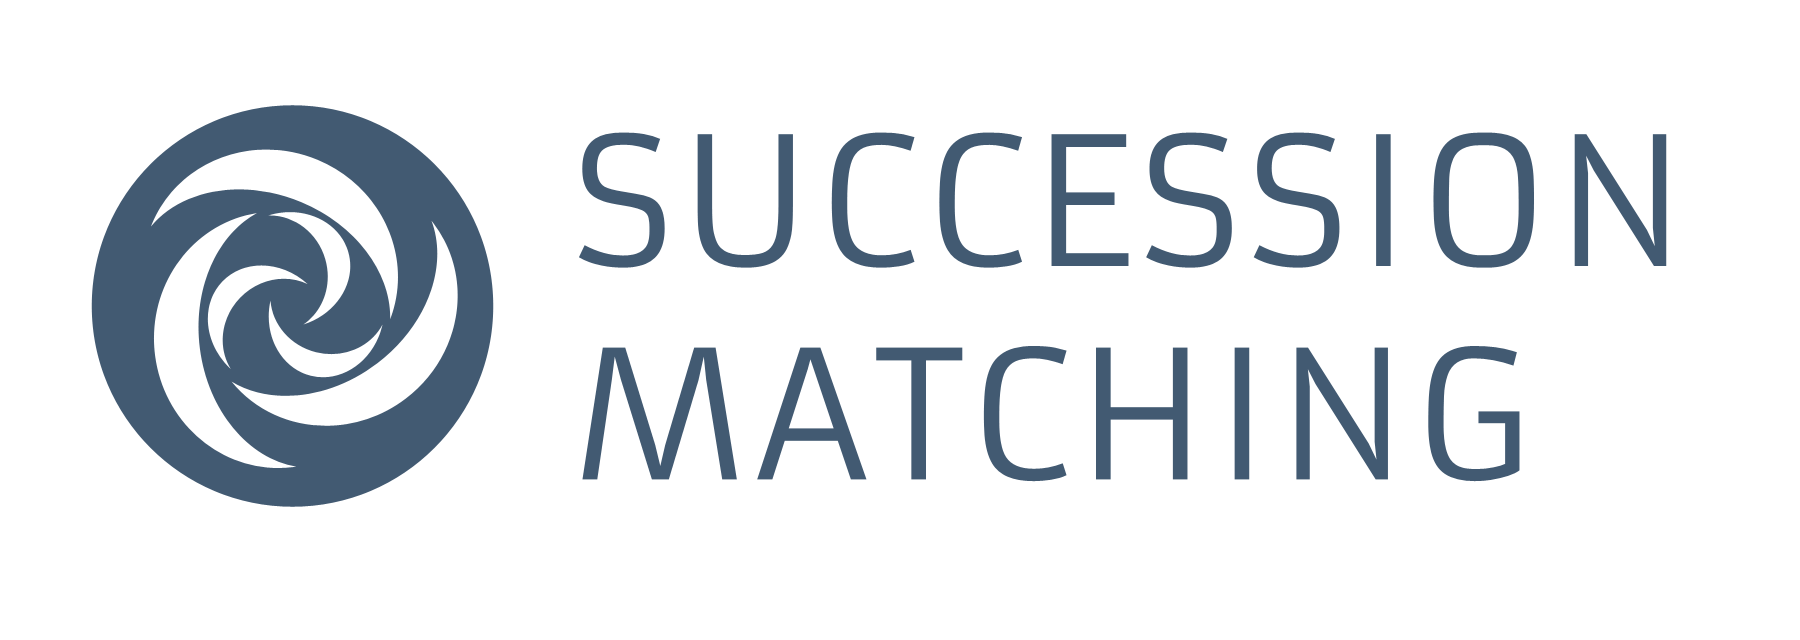 Le logo de SuccessionMatching